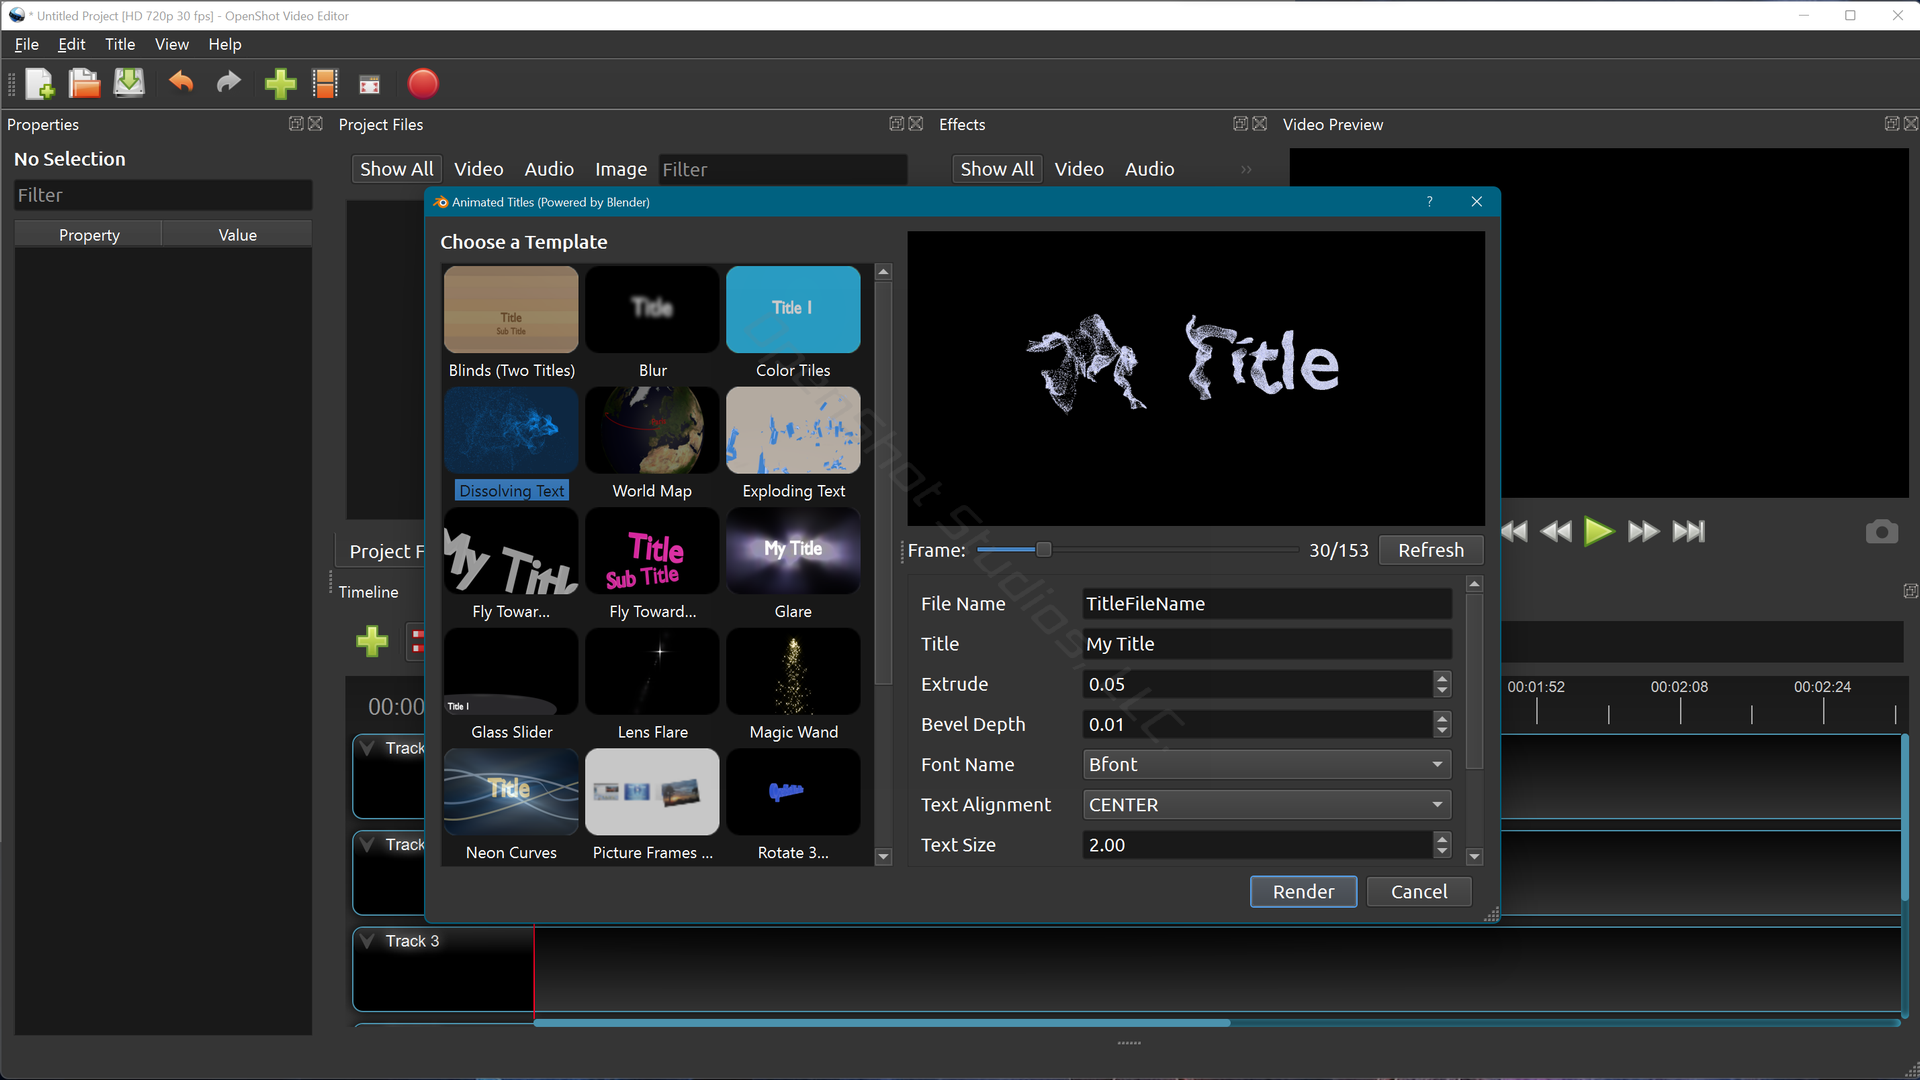 OpenShot Video Editor Software - 5